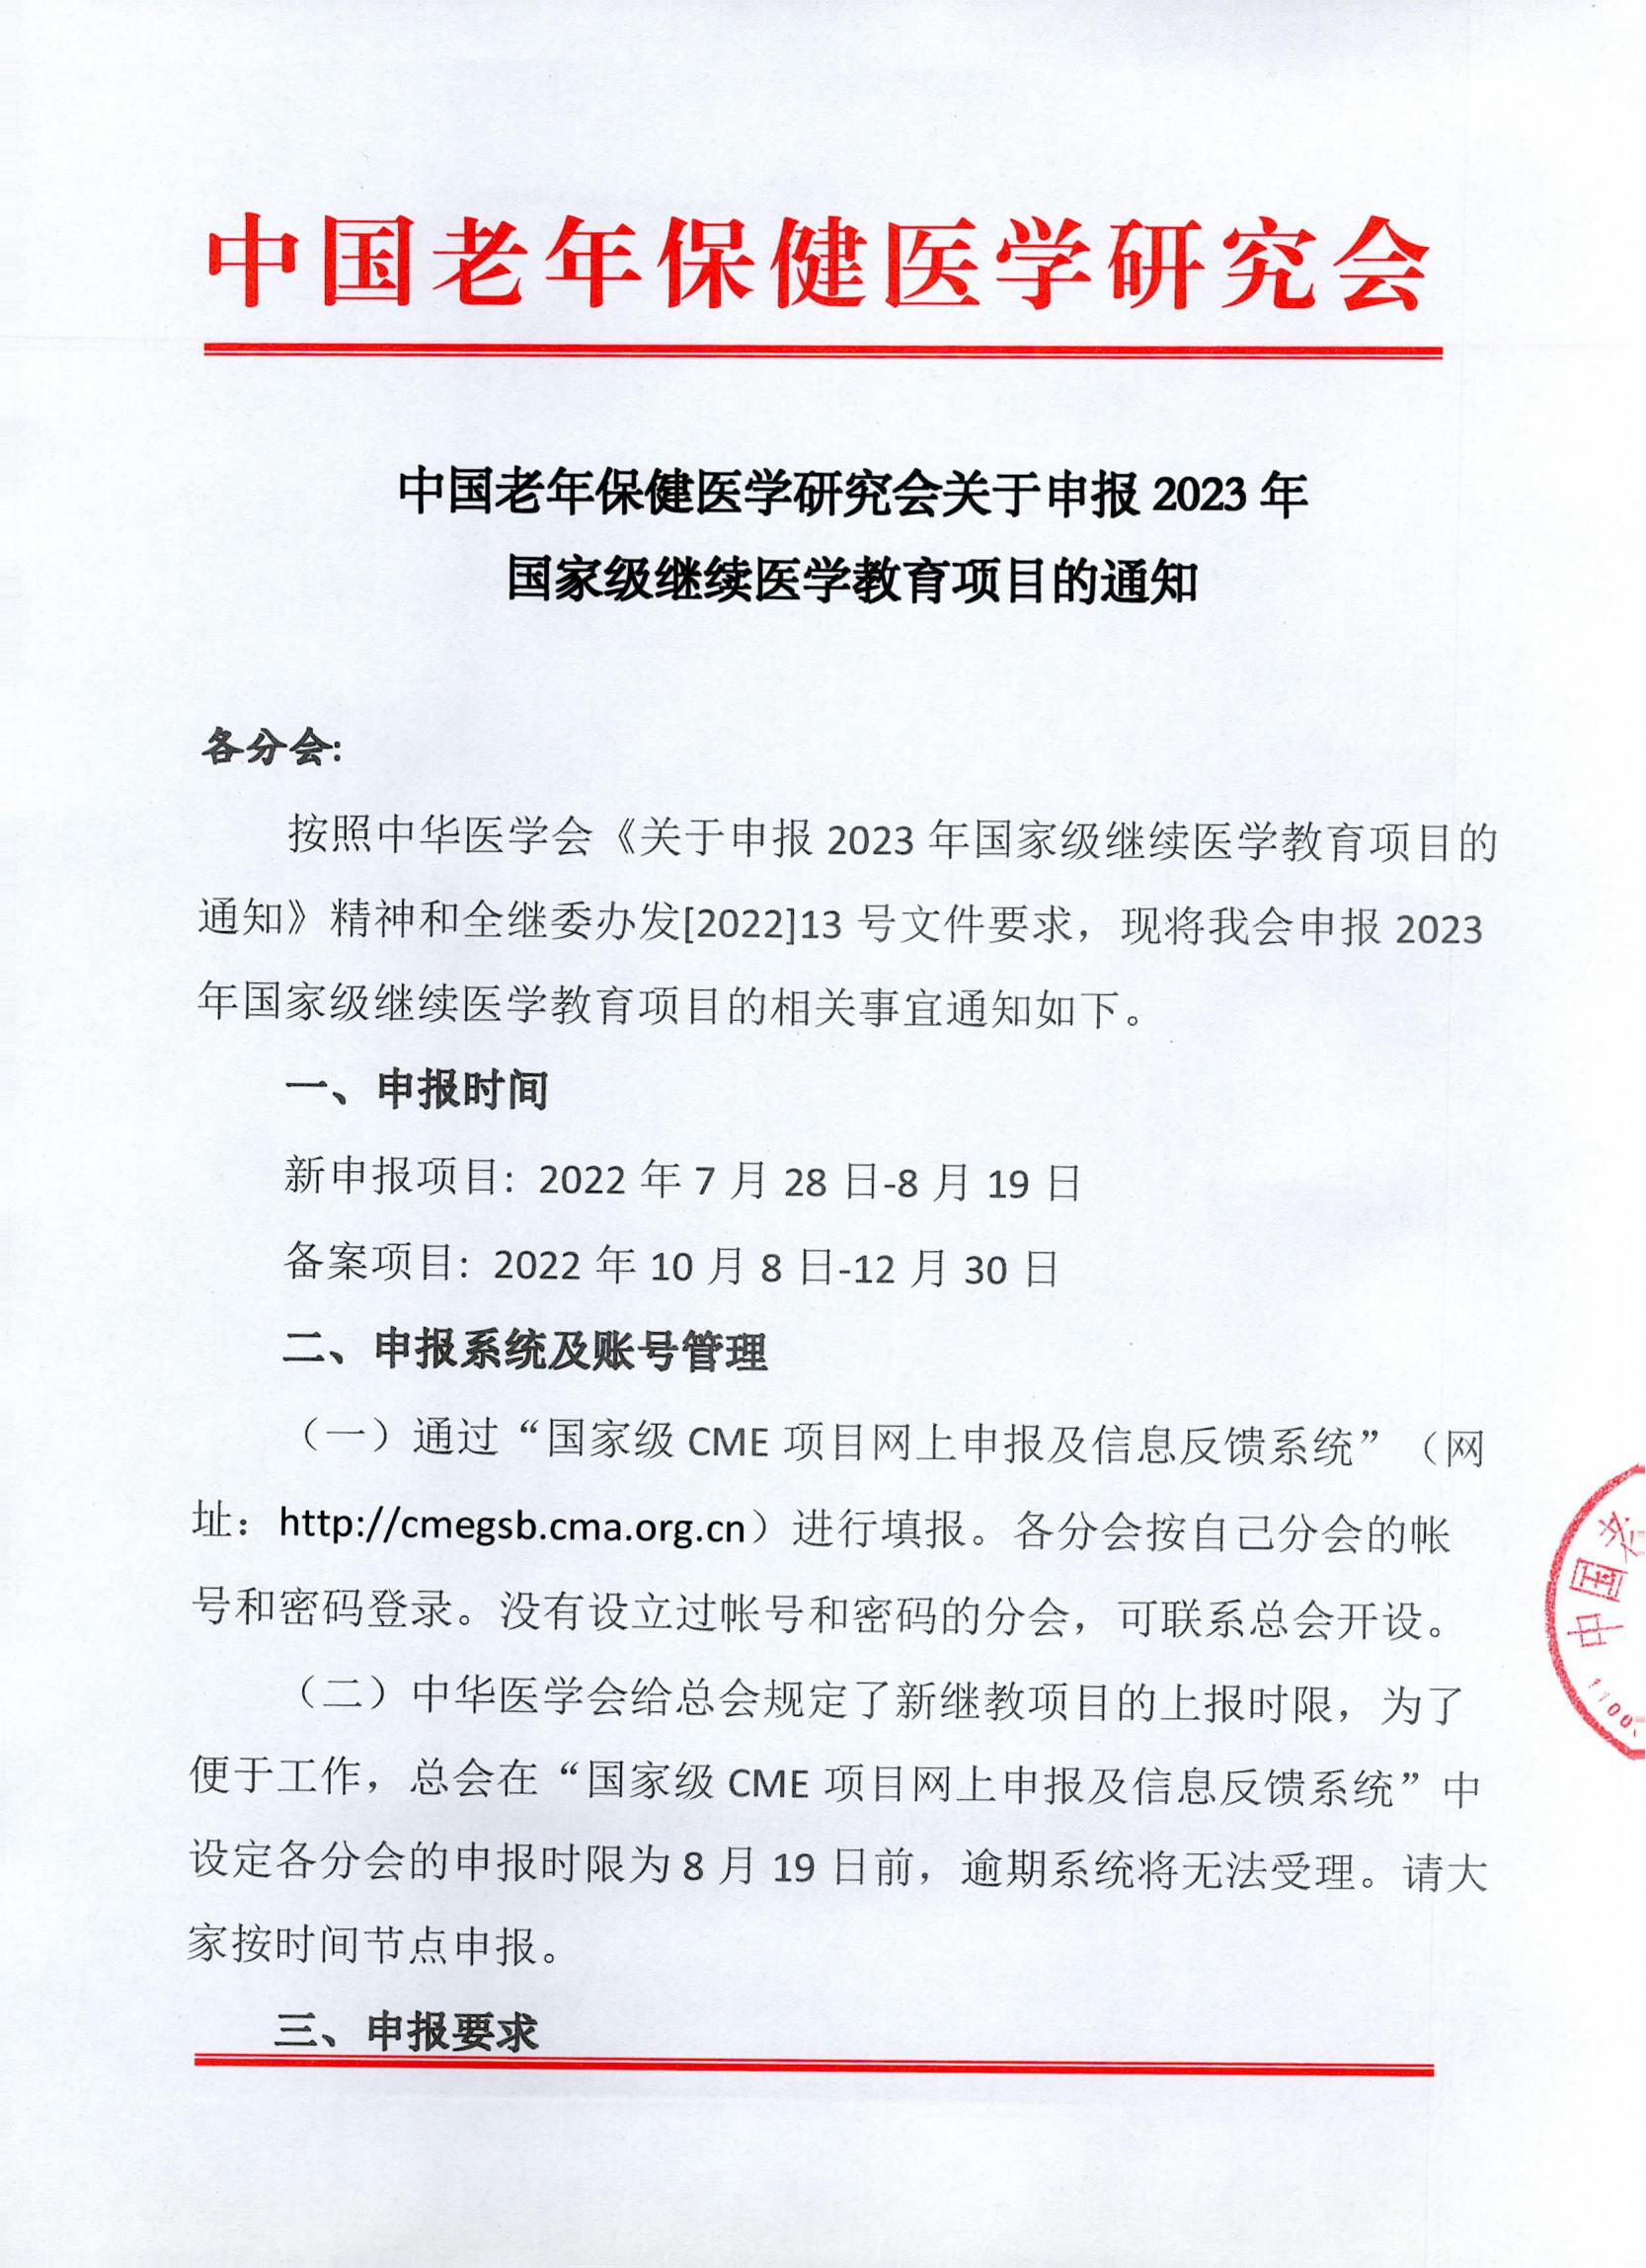 中国老年保健医学研究会申报2023年国家级继续医学教育项目的通知_00.jpg